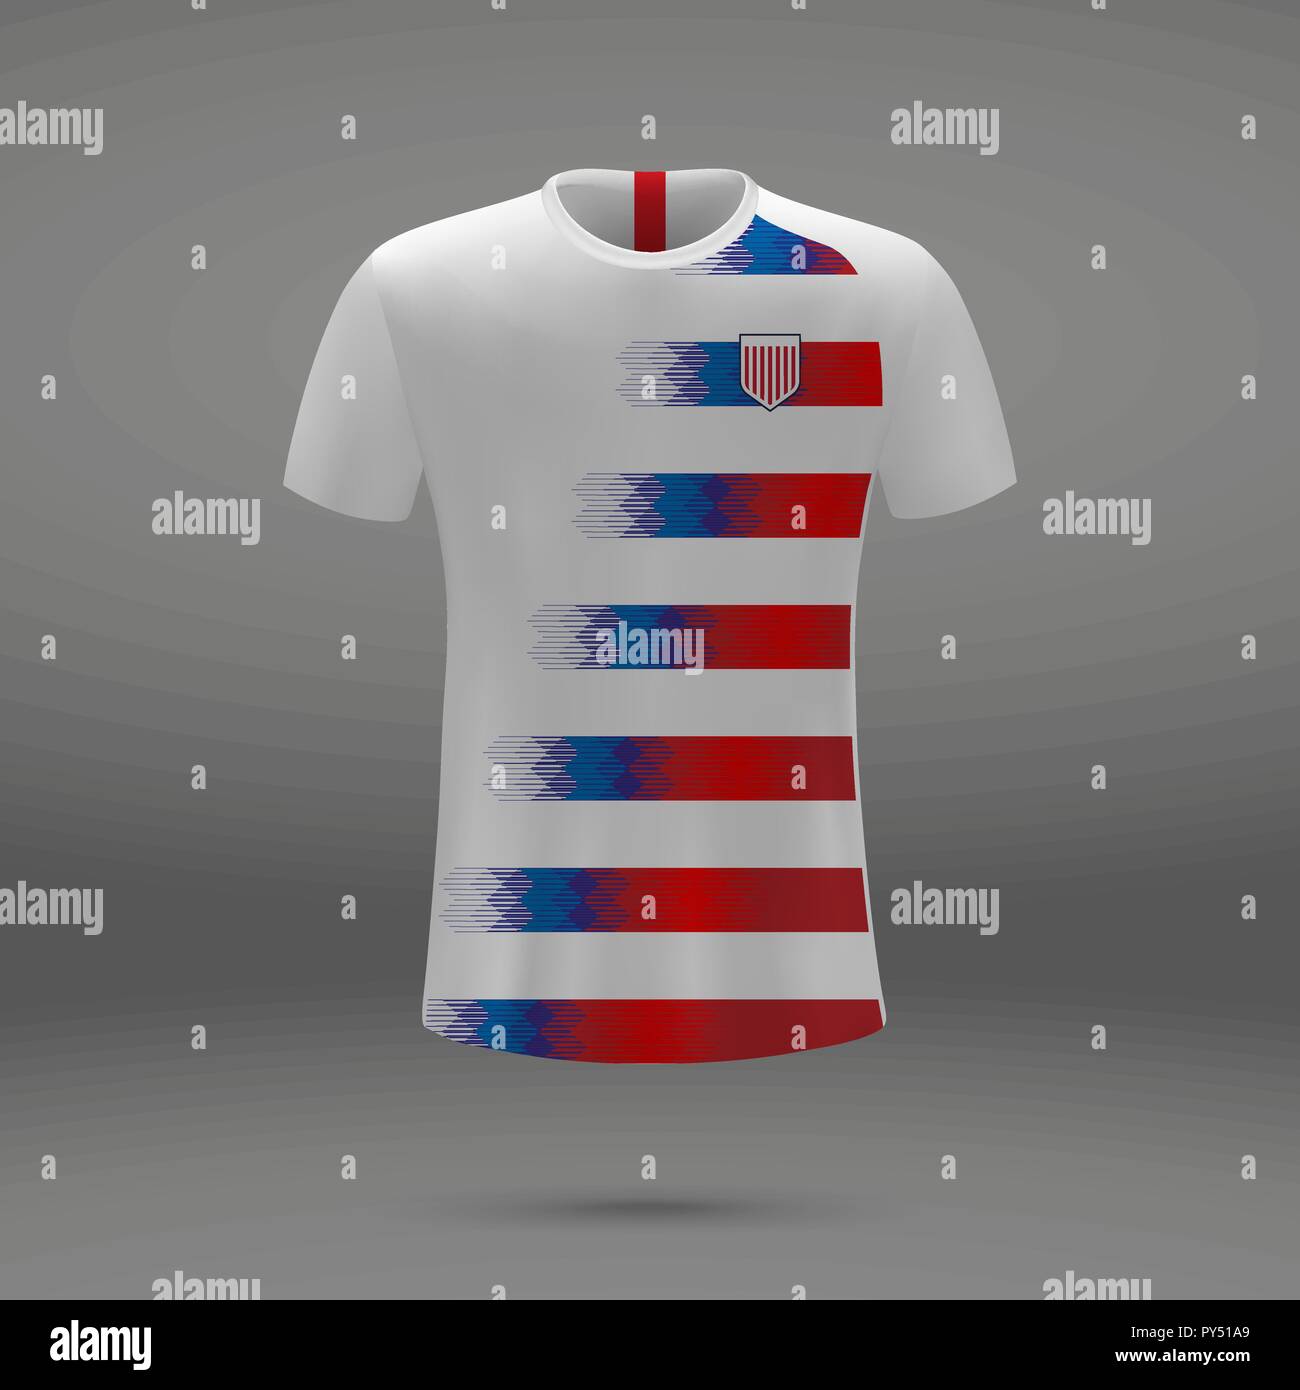 Premium Vector  American football jersey,t-shirt sport design